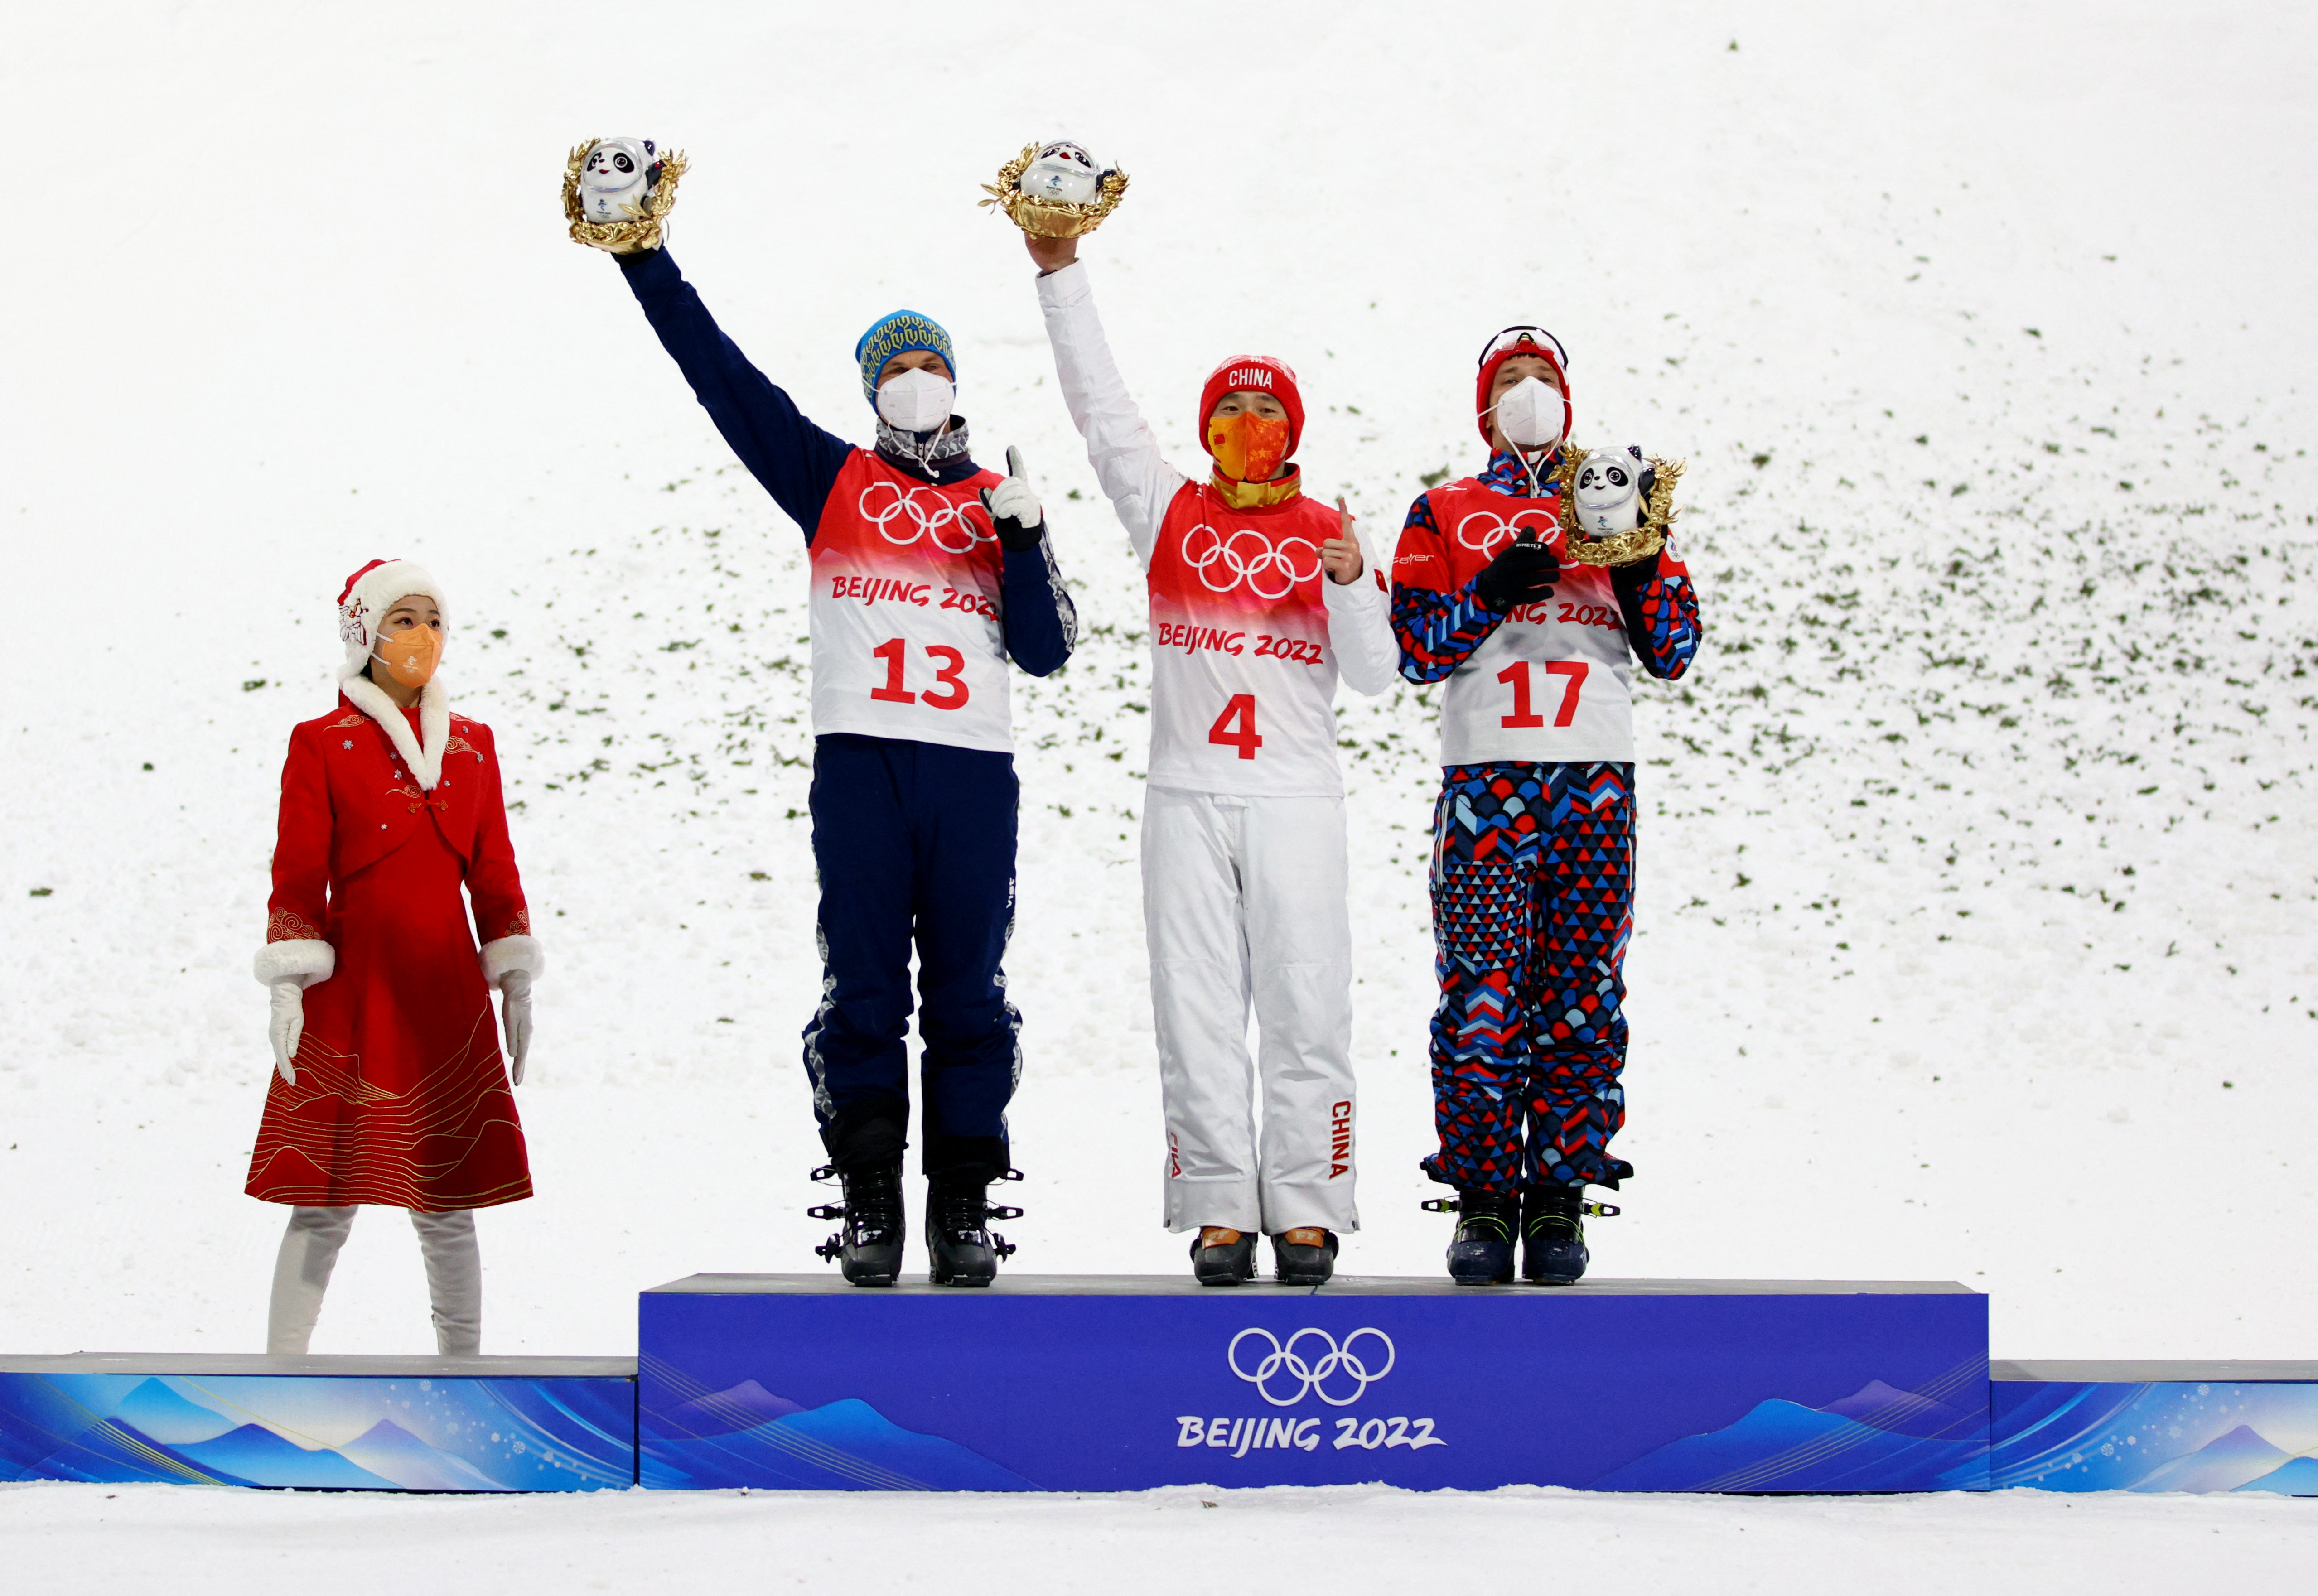 Олимпийским чемпионом стал китаец Ци Гуанпу, серебро у украинца Александра Абраменко, а бронза у представителя ОКР Ильи Бурова. Фото: REUTERS